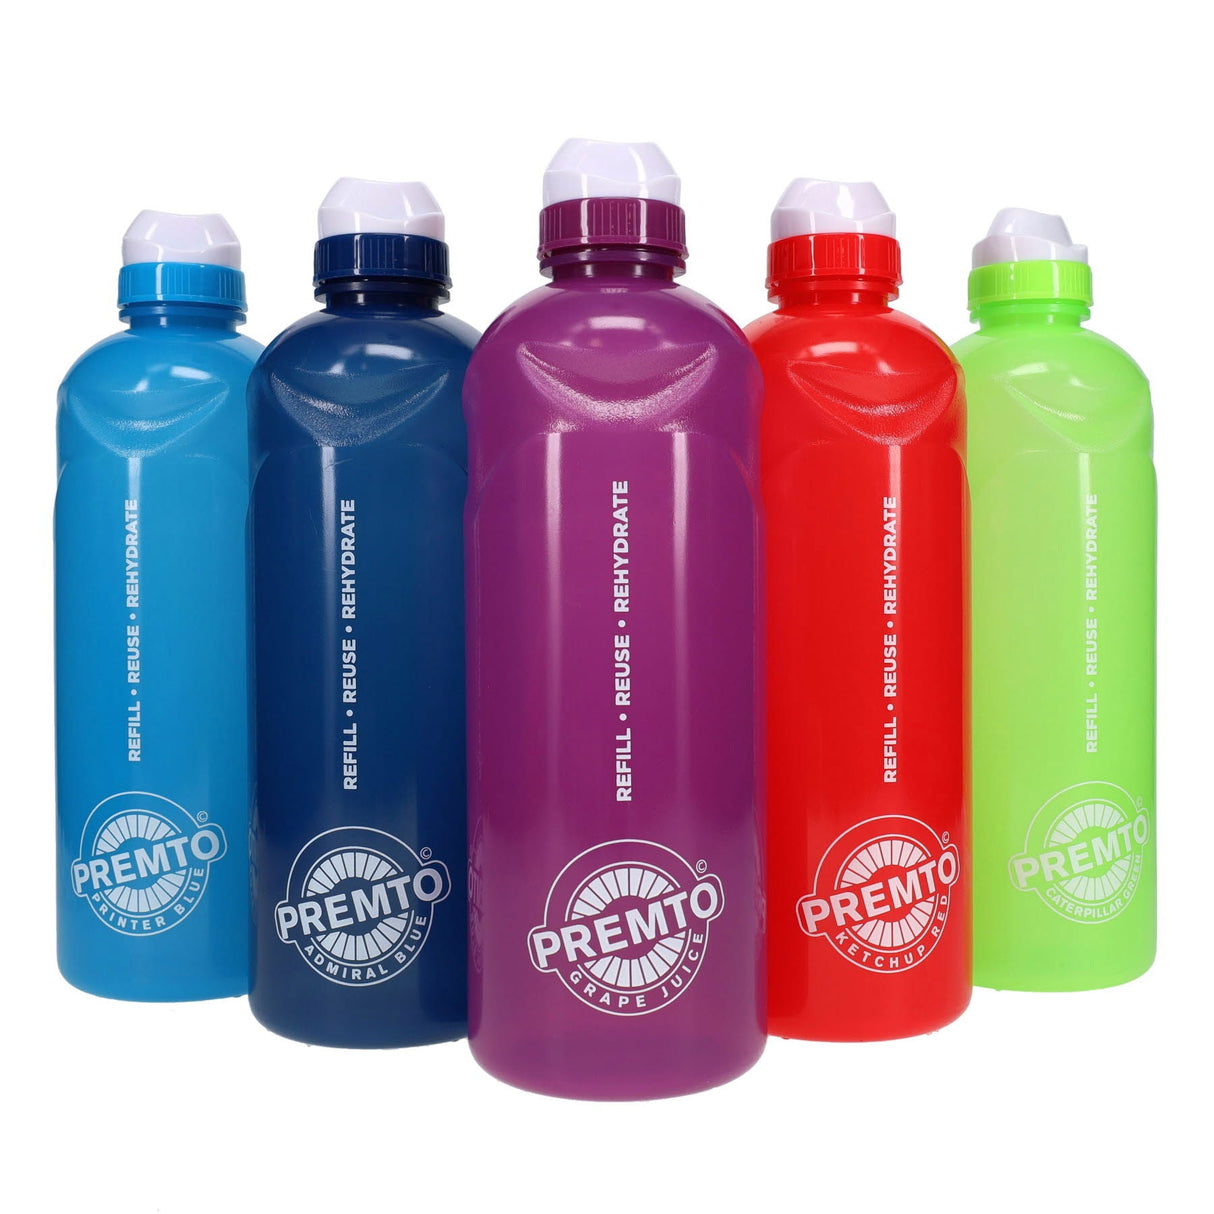 Premto 1 Litre Stealth Bottle - Printer Blue | Stationery Shop UK